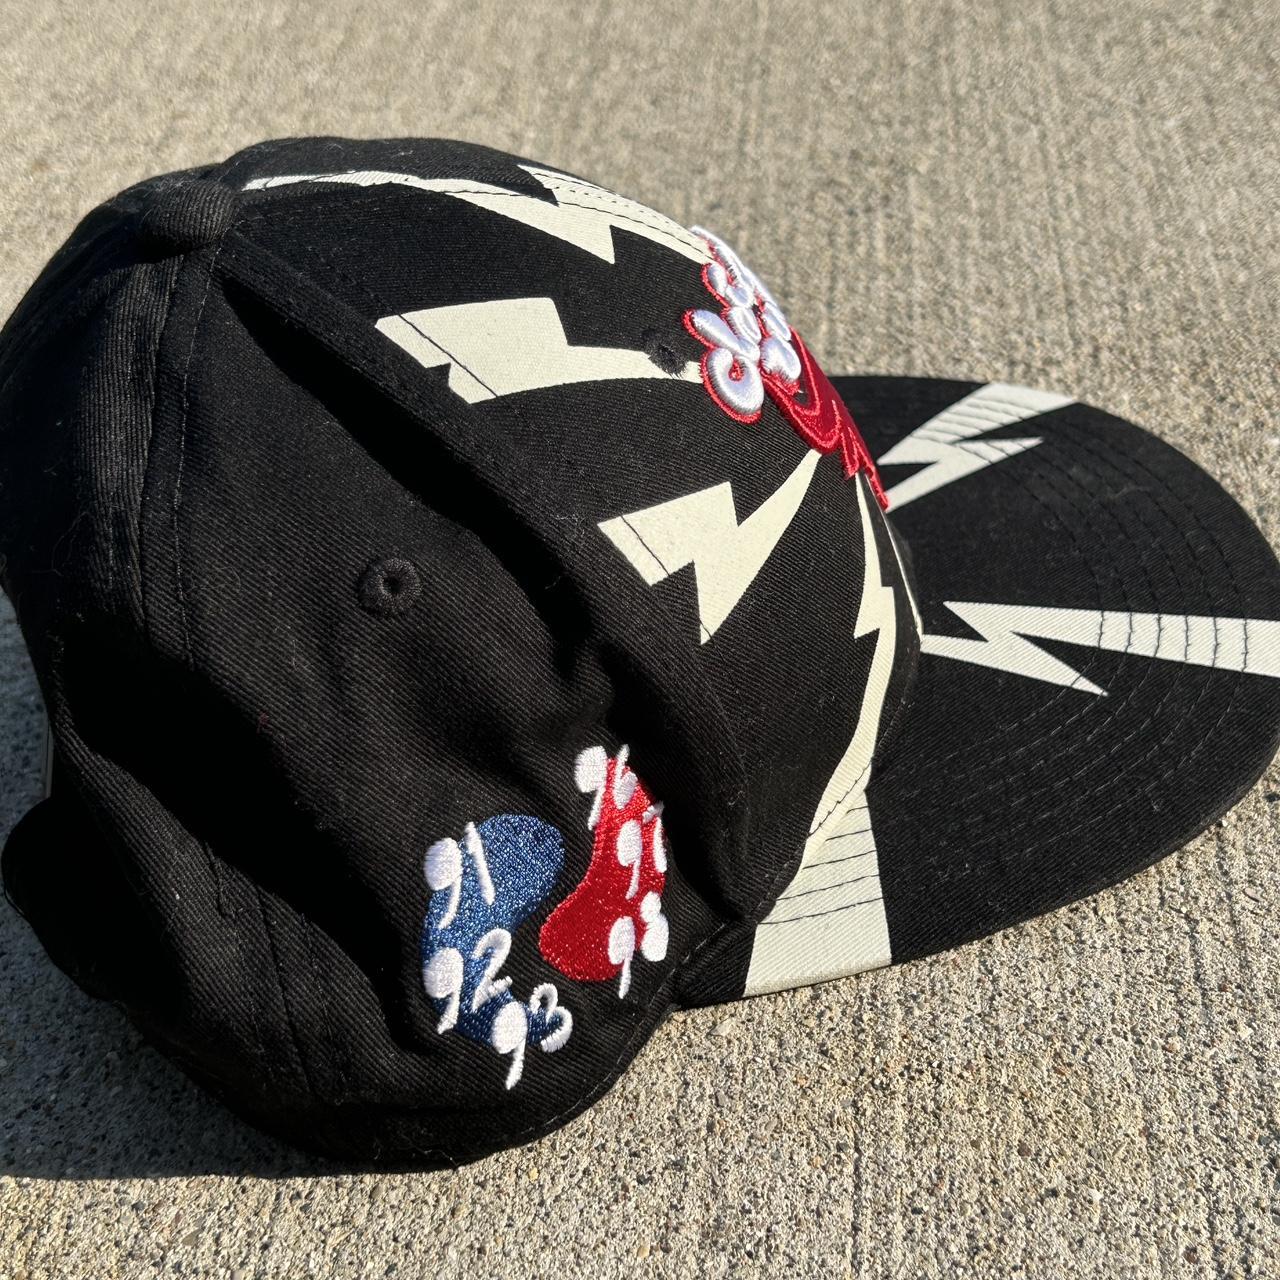 Rare Vintage Snapback Hats for sale on IG - Depop